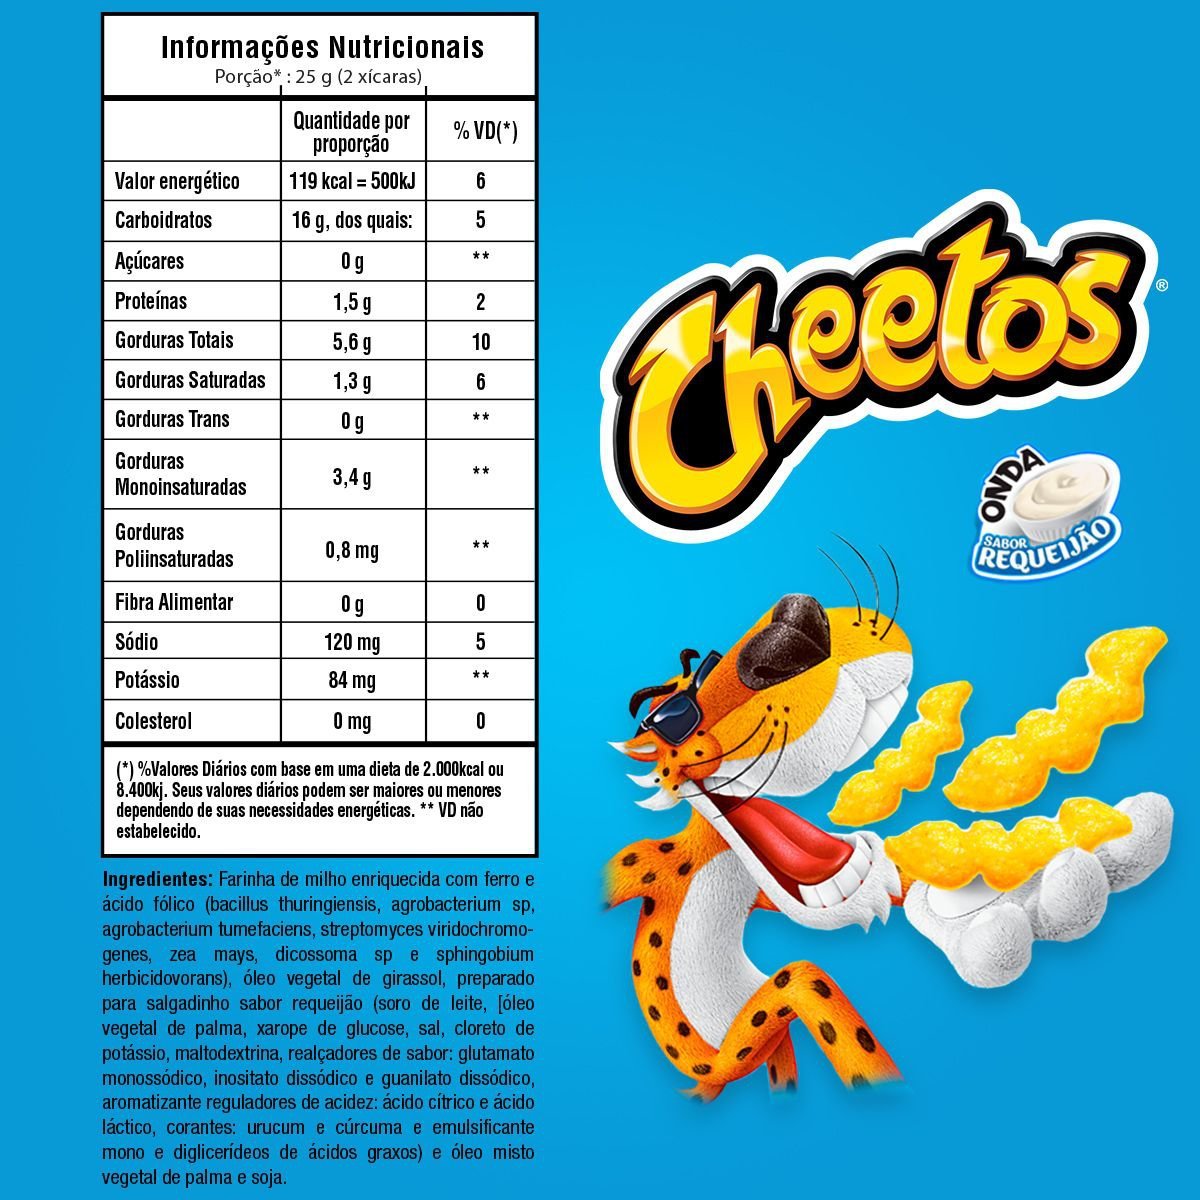 Salgadinho de Milho Onda Requeijão Elma Chips Cheetos Pacote 95g